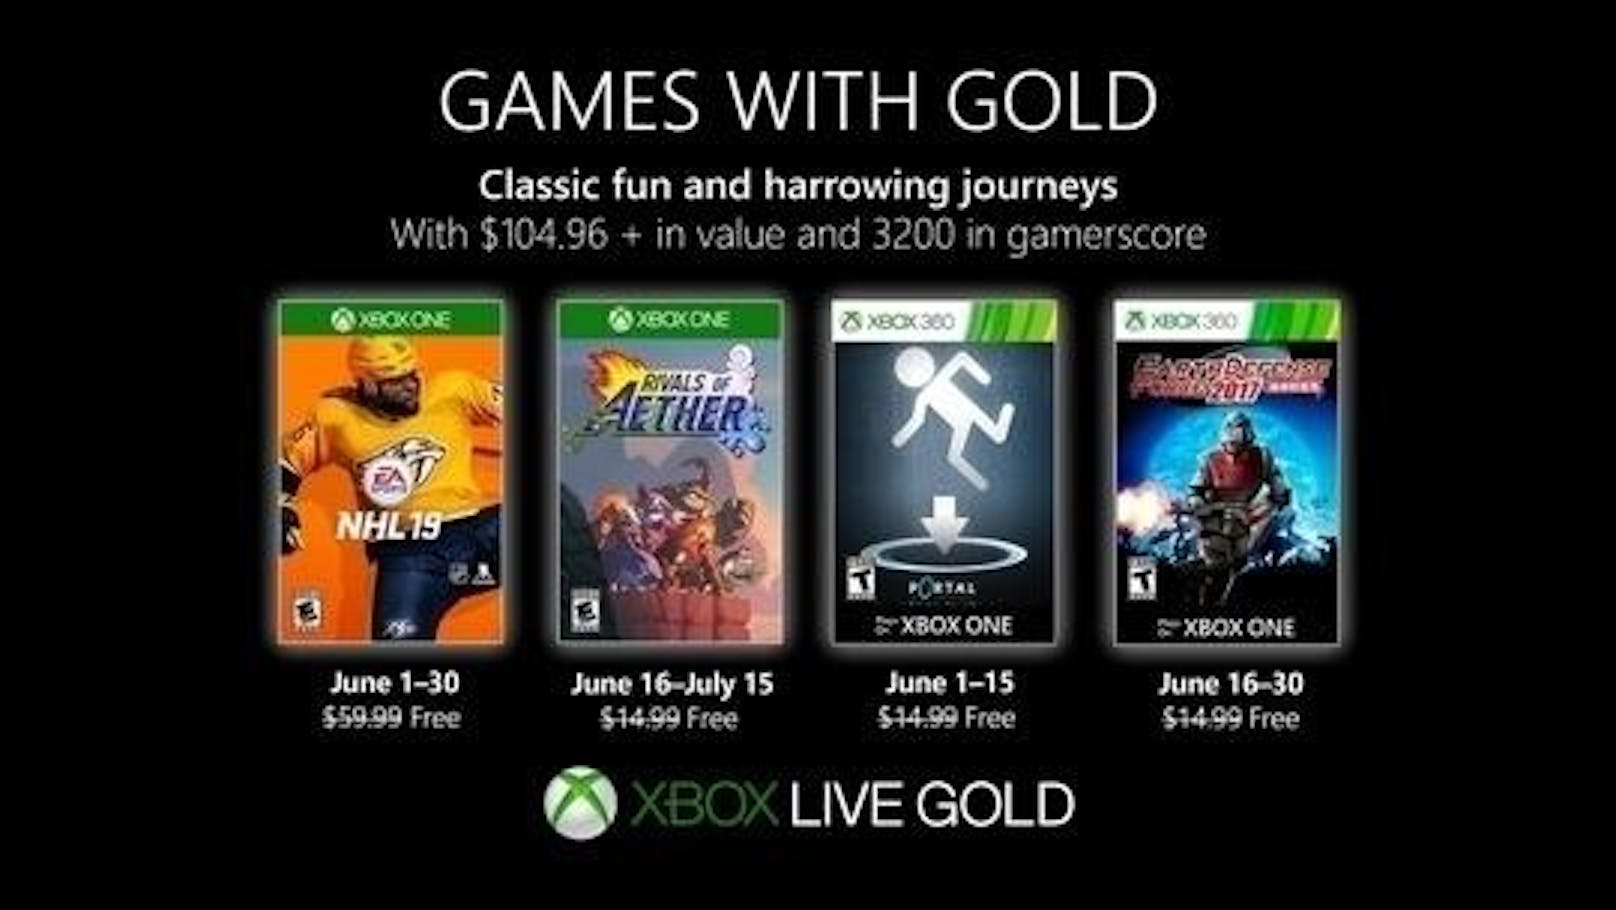 <b>31. Mai 2019:</b> Games with Gold, diese Spiele gibt es im Juni gratis! Im Juni warten im Rahmen der Games with Gold wieder tolle kostenlose Spiele auf Xbox-Zocker. EA Sports NHL 19 ist vom 1. bis 30. Juni auf Xbox One verfügbar. Rivals of Aether ist vom 16. Juni bis 15. Juli auf Xbox One verfügbar. Portal: Still Alive ist vom 1. bis 15. Juni auf Xbox One und Xbox 360 verfügbar. Earth Defense Force 2017 ist vom 16. bis 30. Juni auf Xbox One und Xbox 360 verfügbar.